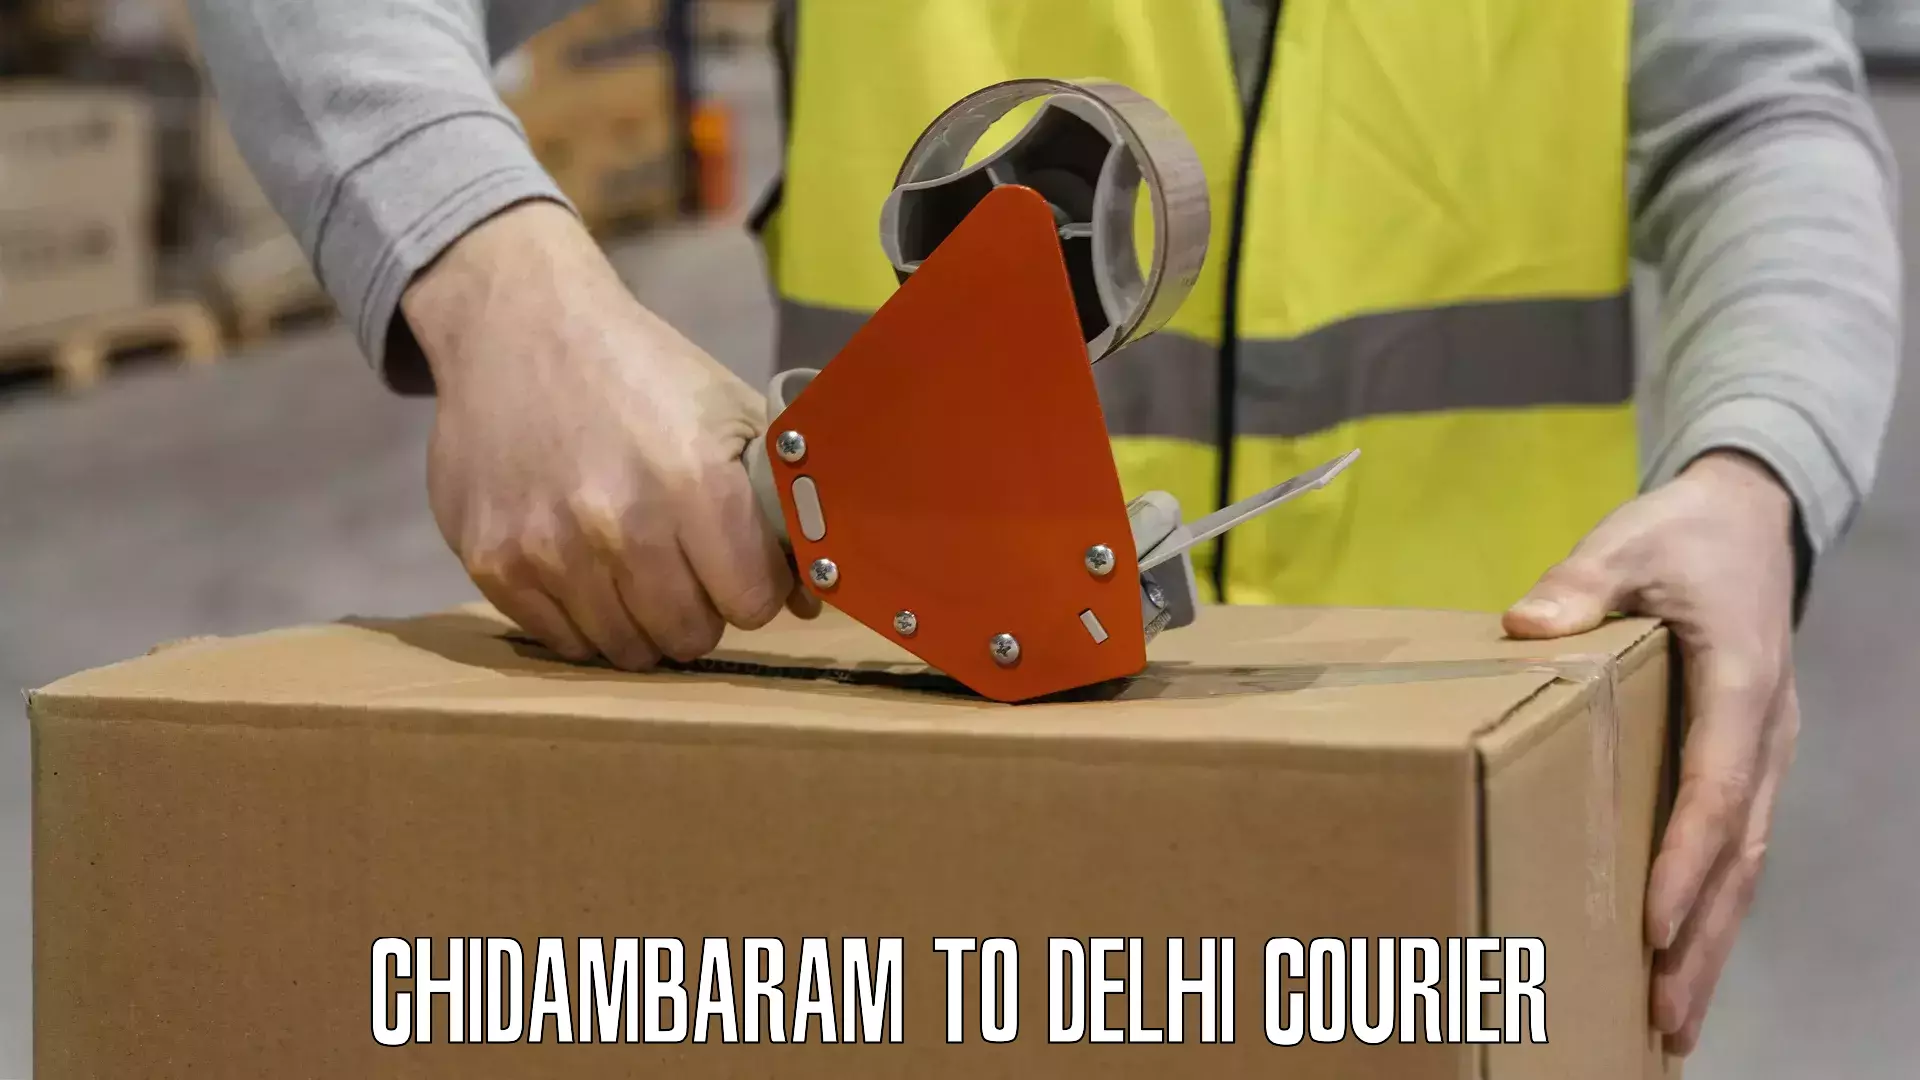 Professional delivery solutions in Chidambaram to Jamia Millia Islamia New Delhi